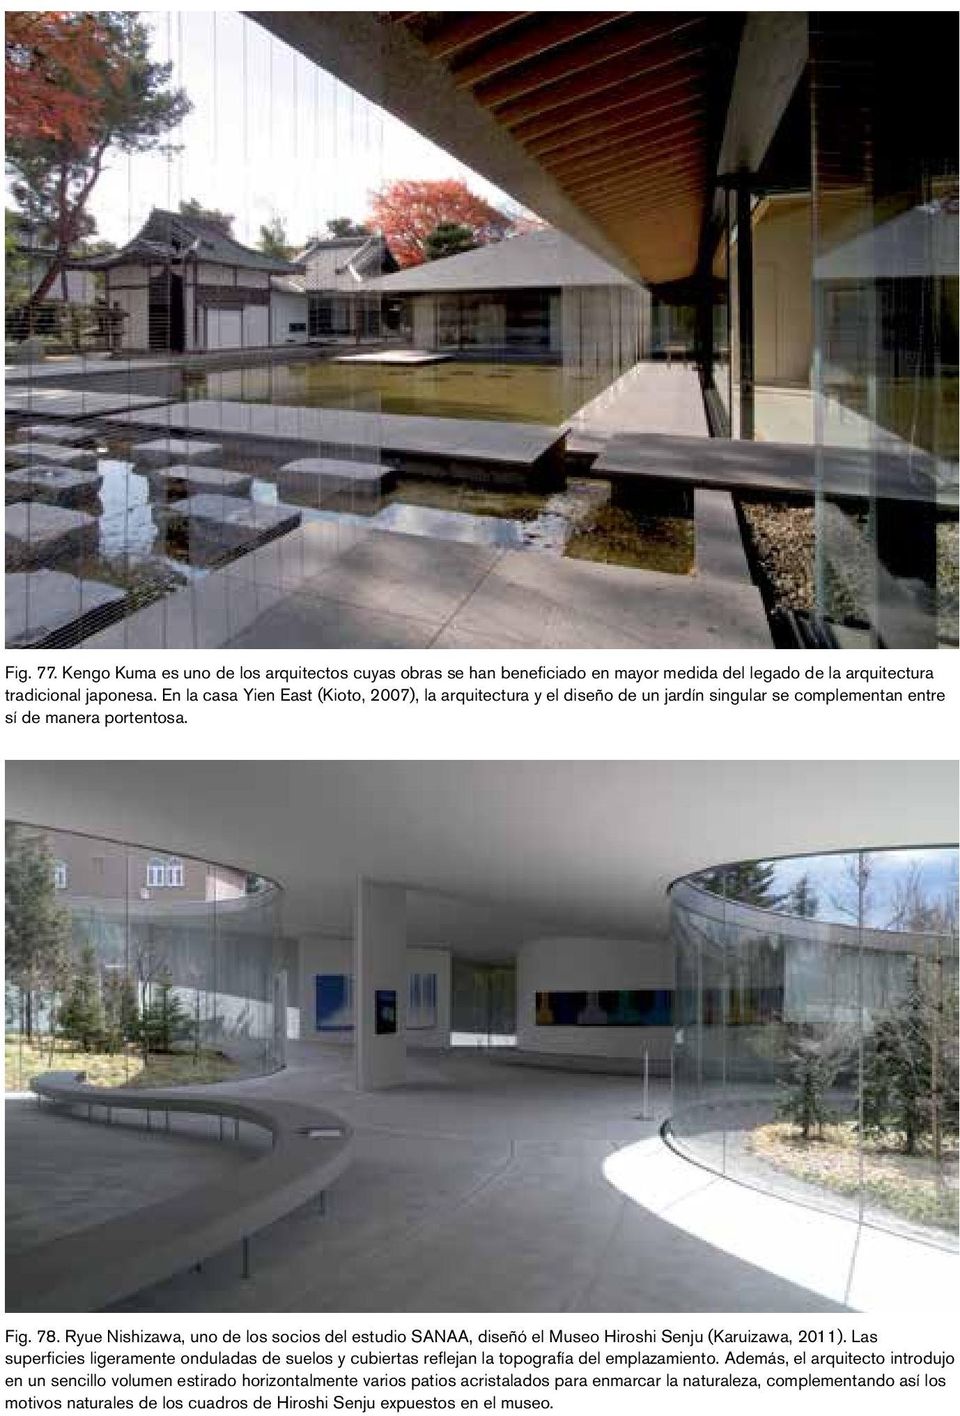 Ryue Nishizawa, uno de los socios del estudio SANAA, diseñó el Museo Hiroshi Senju (Karuizawa, 2011).